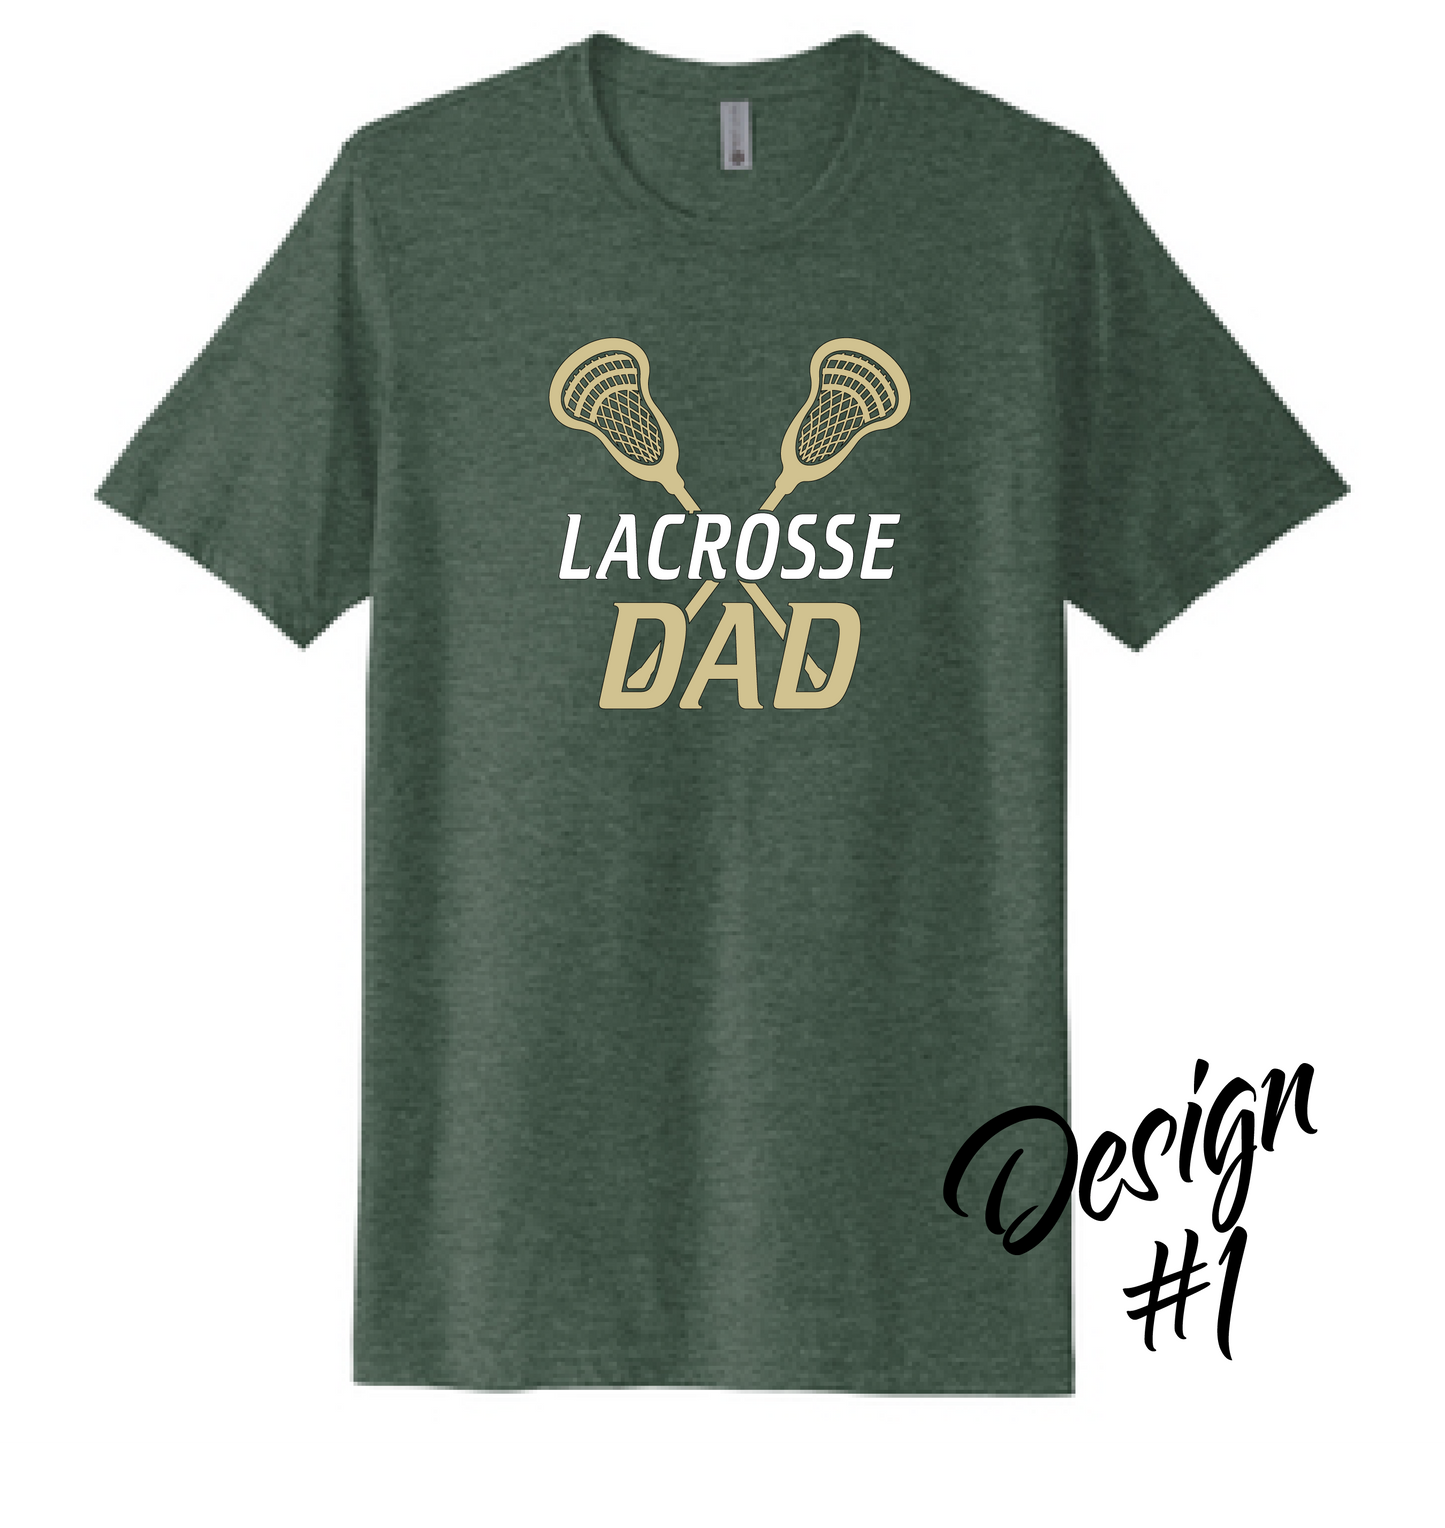 Lacrosse Dad - T-Shirt Designs